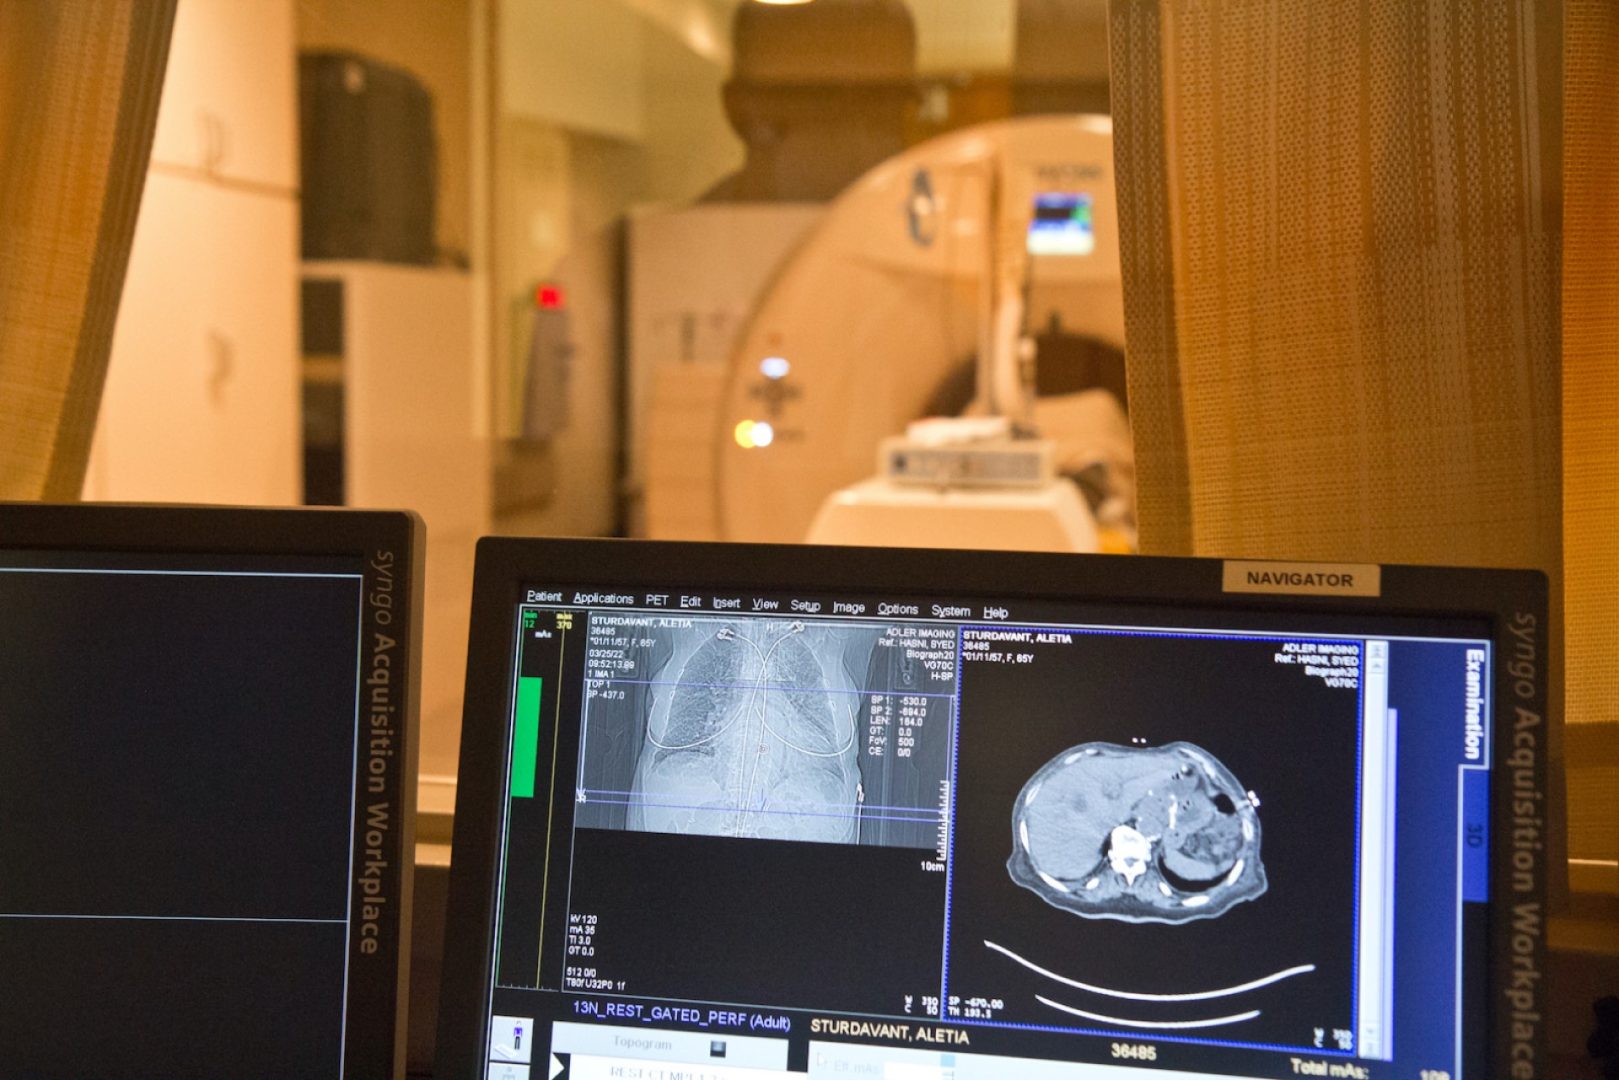 A PET scan in process at Adler Imaging.